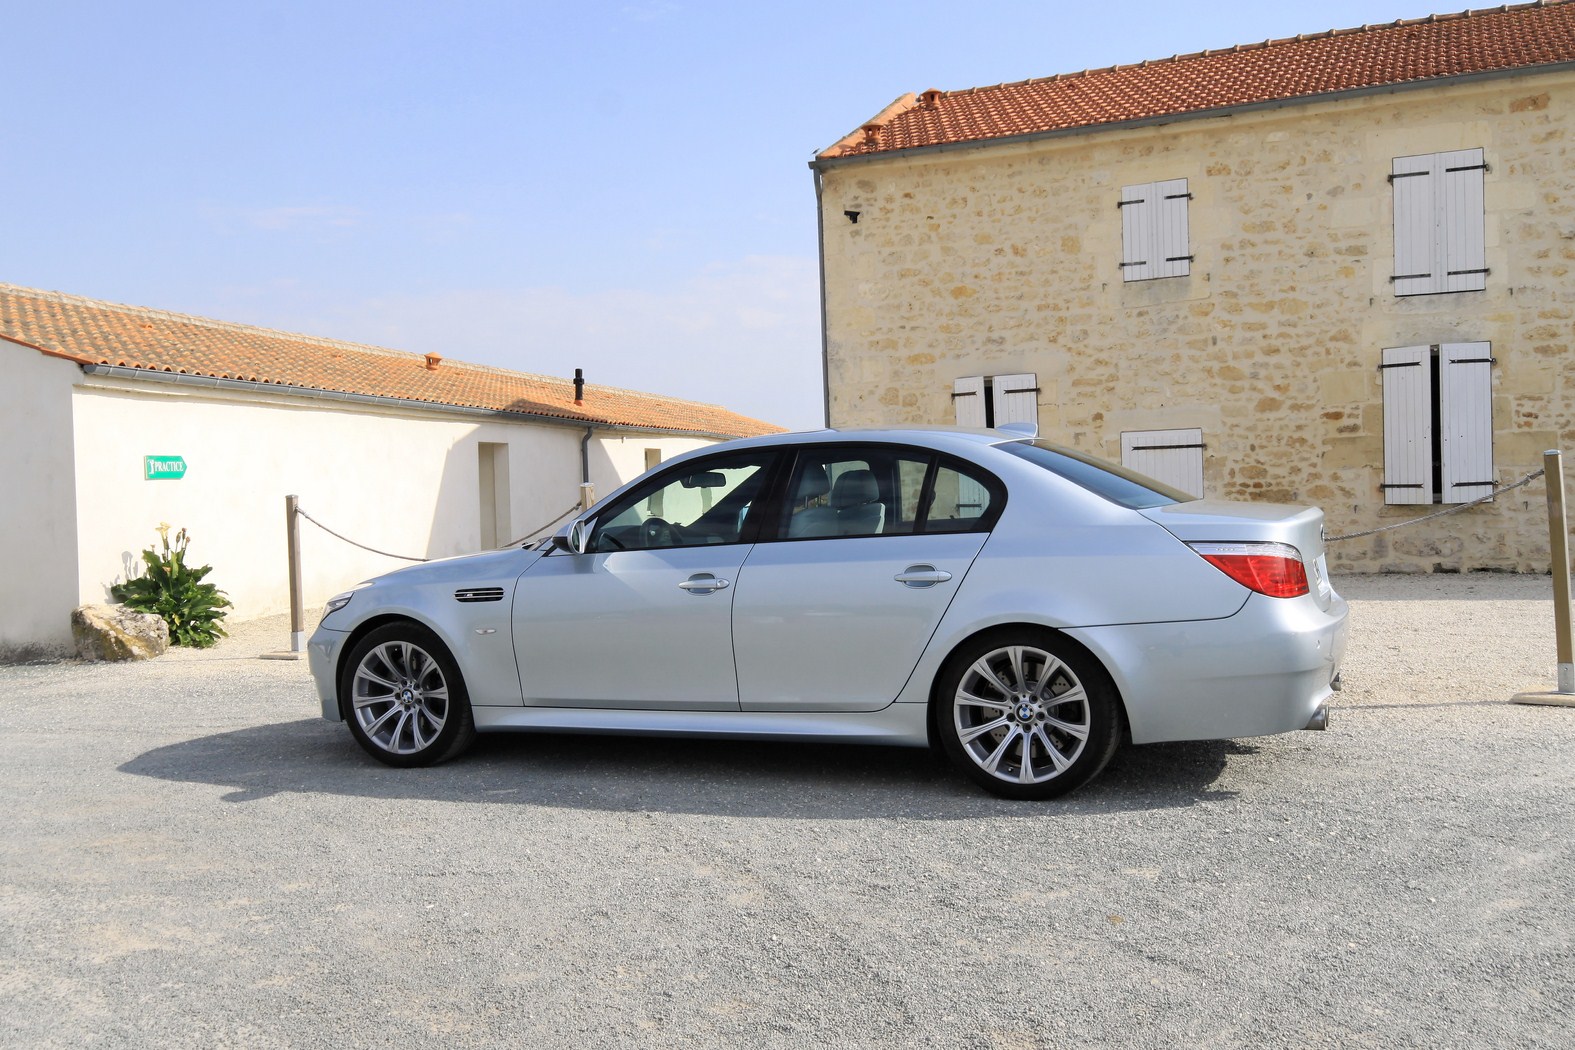 BMW M5 E60 : cette automobile est qualifiée de GT des pères de famille